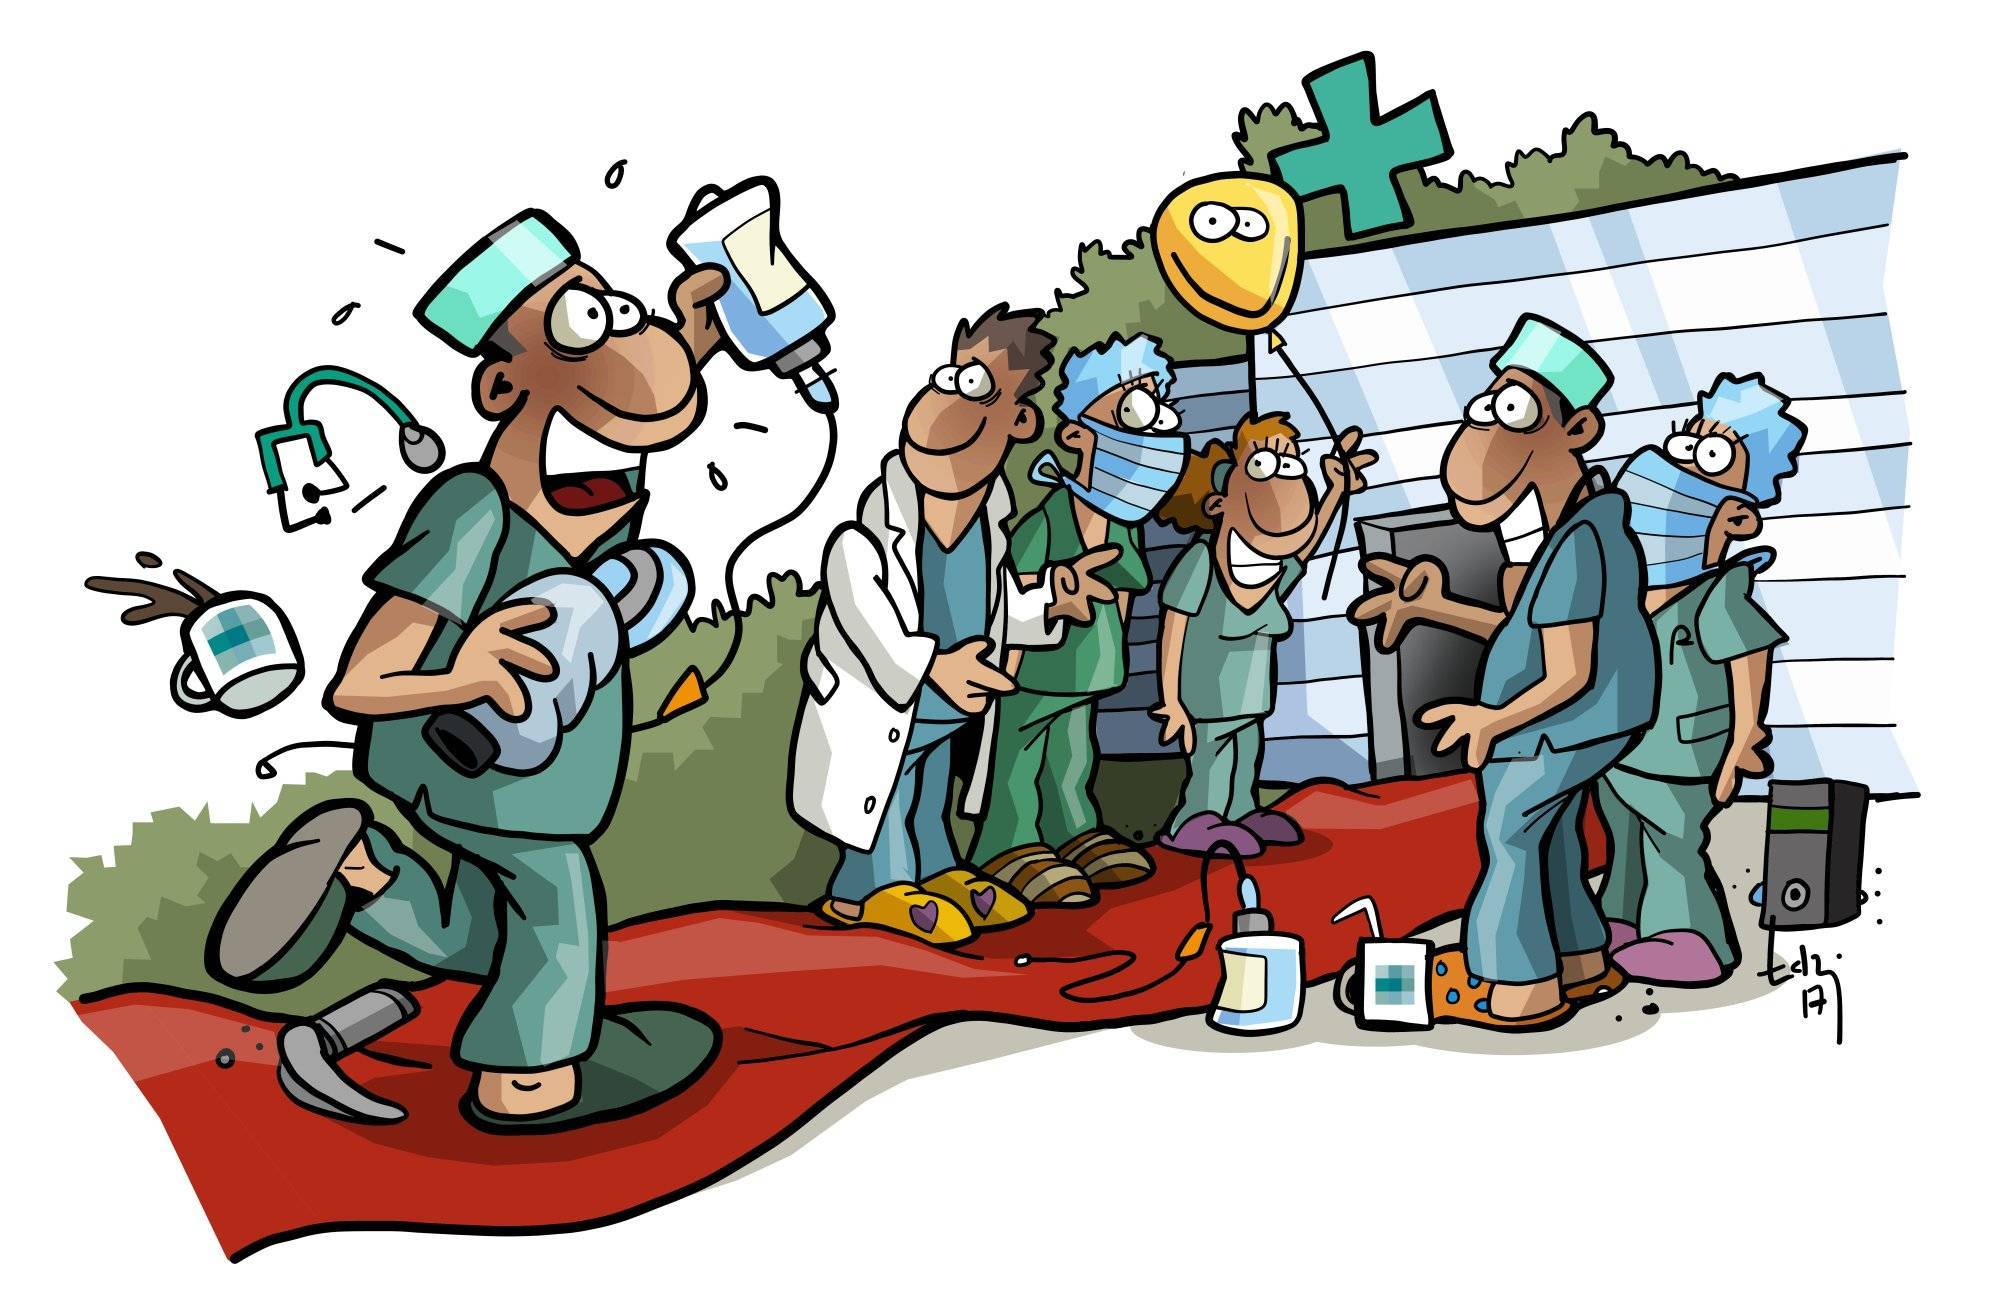 HaD-Cartoon: Willkommensszenario für einen neuen Pflegekraft bei Hire a Doctor. Die Teammitglieder heißen den neuen Mitarbeiter herzlich willkommen. Der Pflegekraft läuft voller Freude auf ihre neuen Kollegen zu.